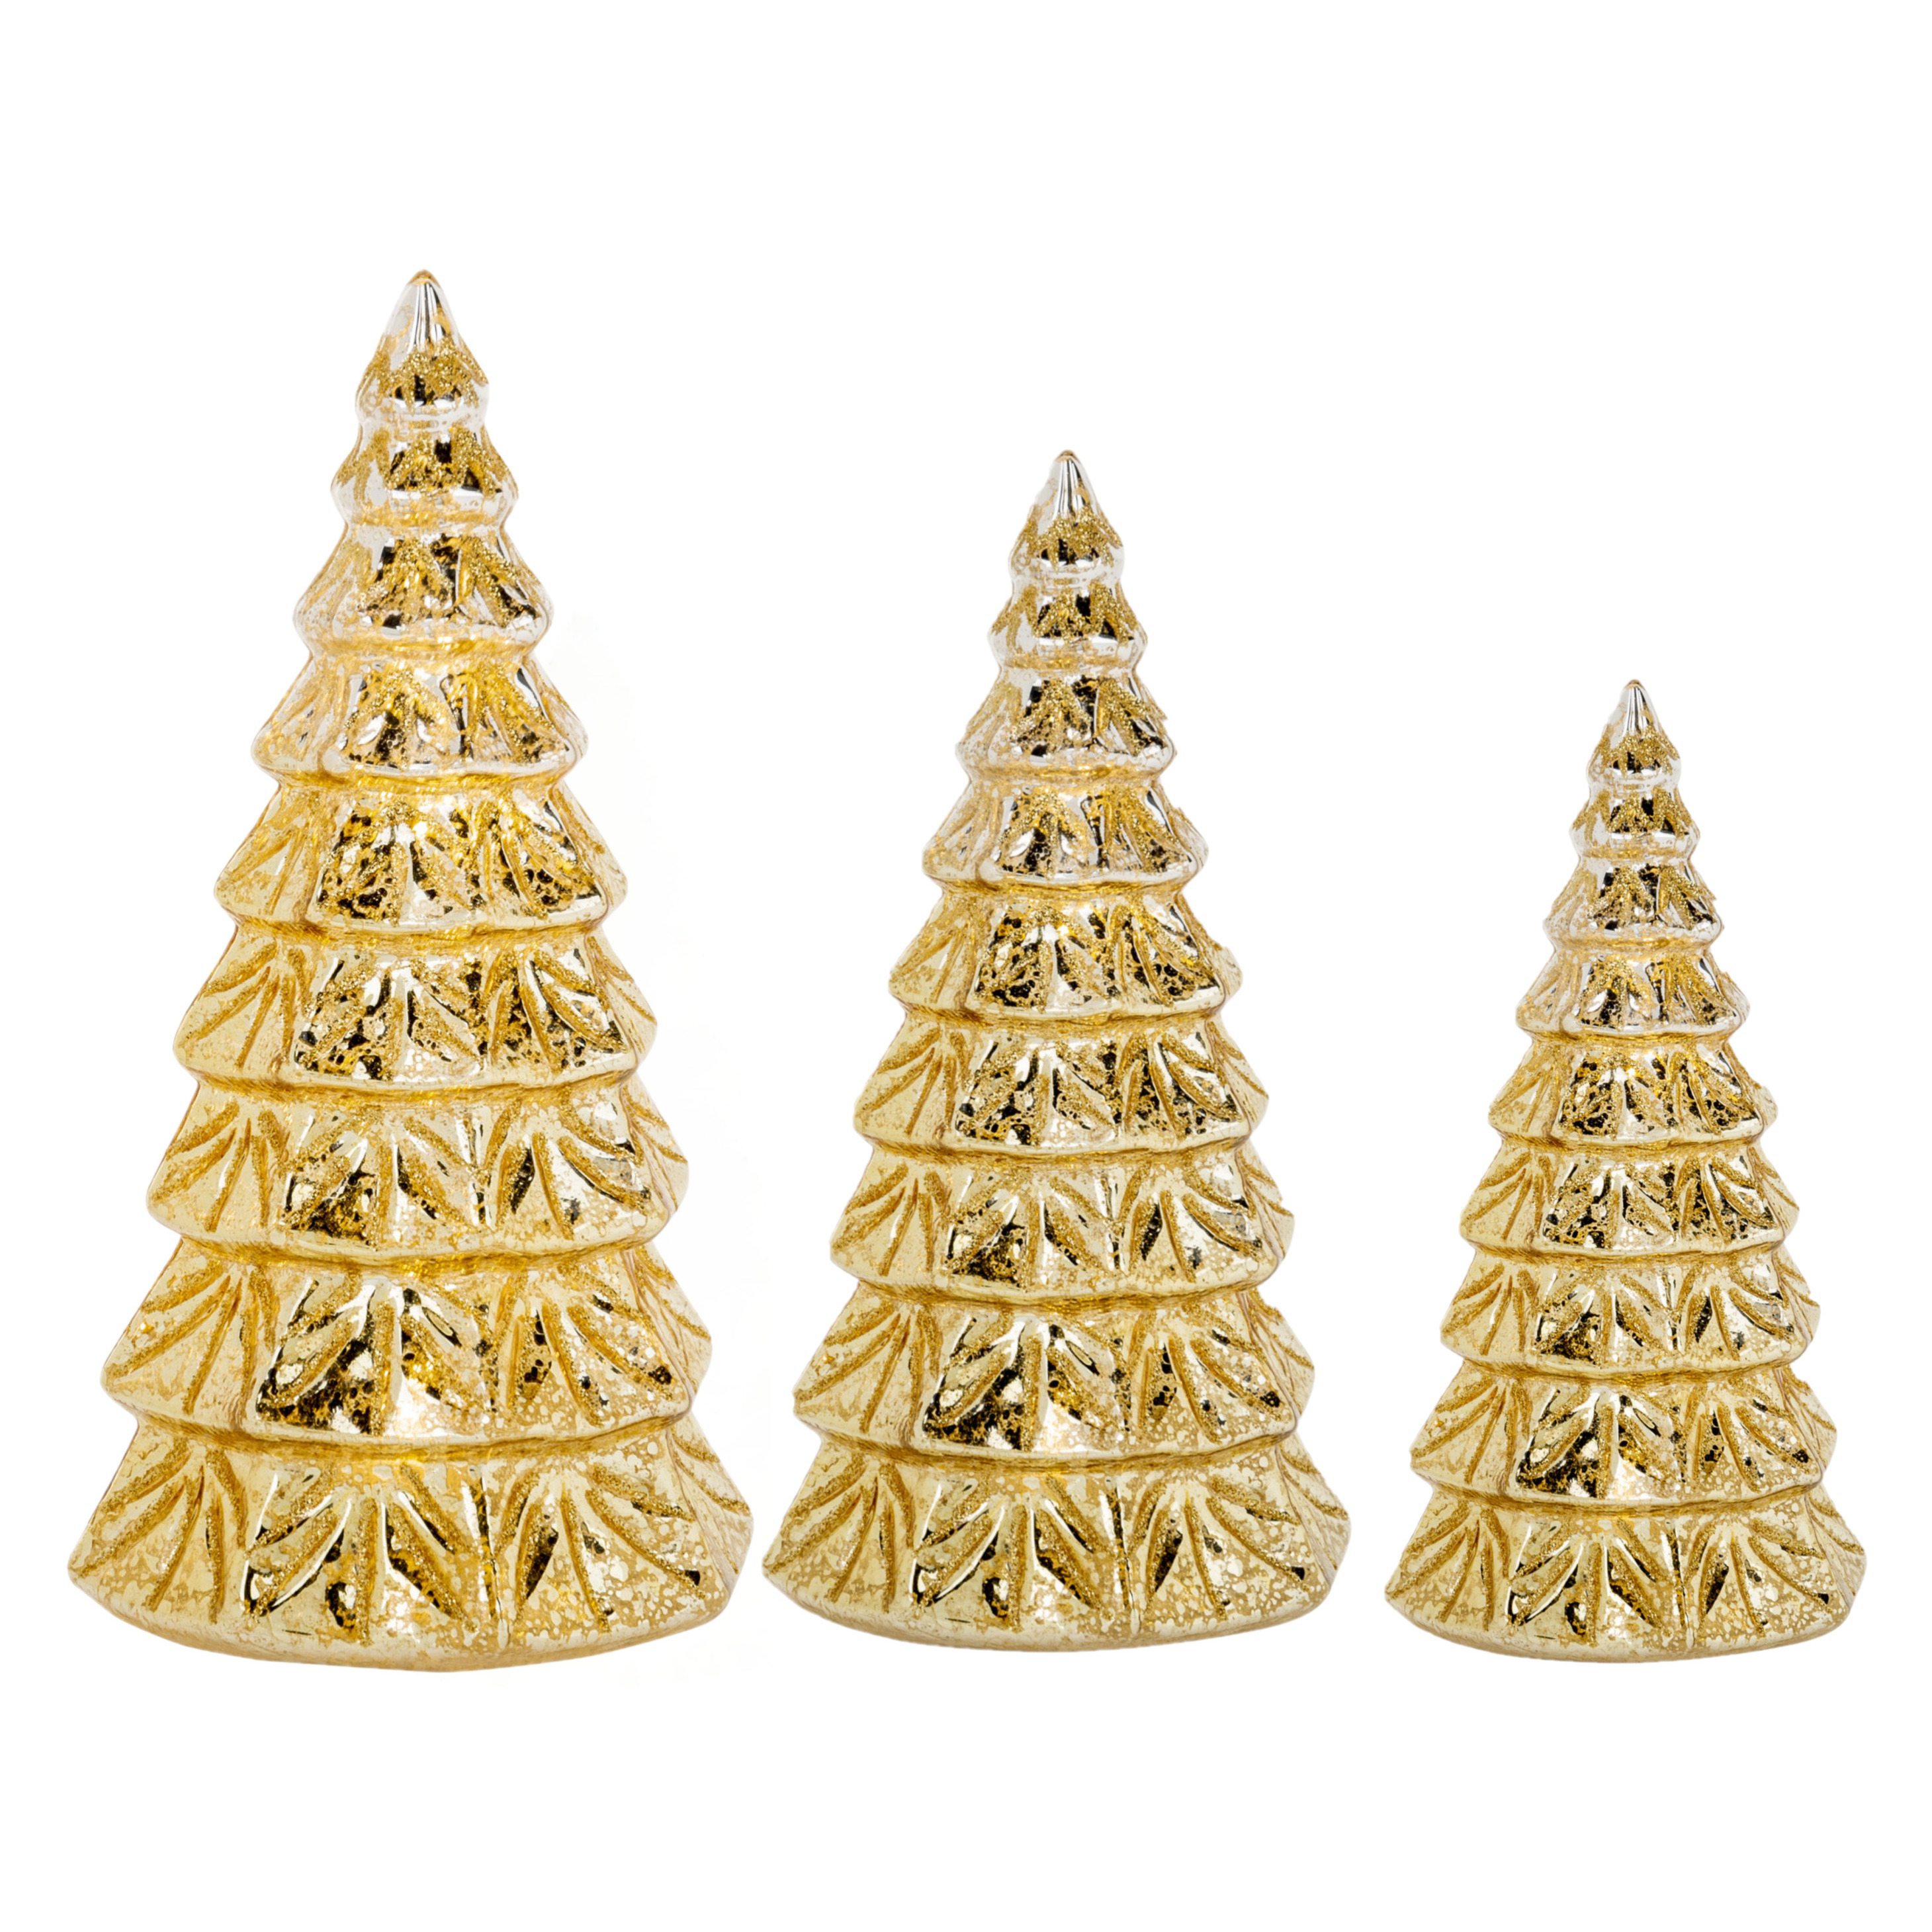 3x stuks led kaarsen kerstboom kaarsen goud H15 cm, H19 cm en H23 cm